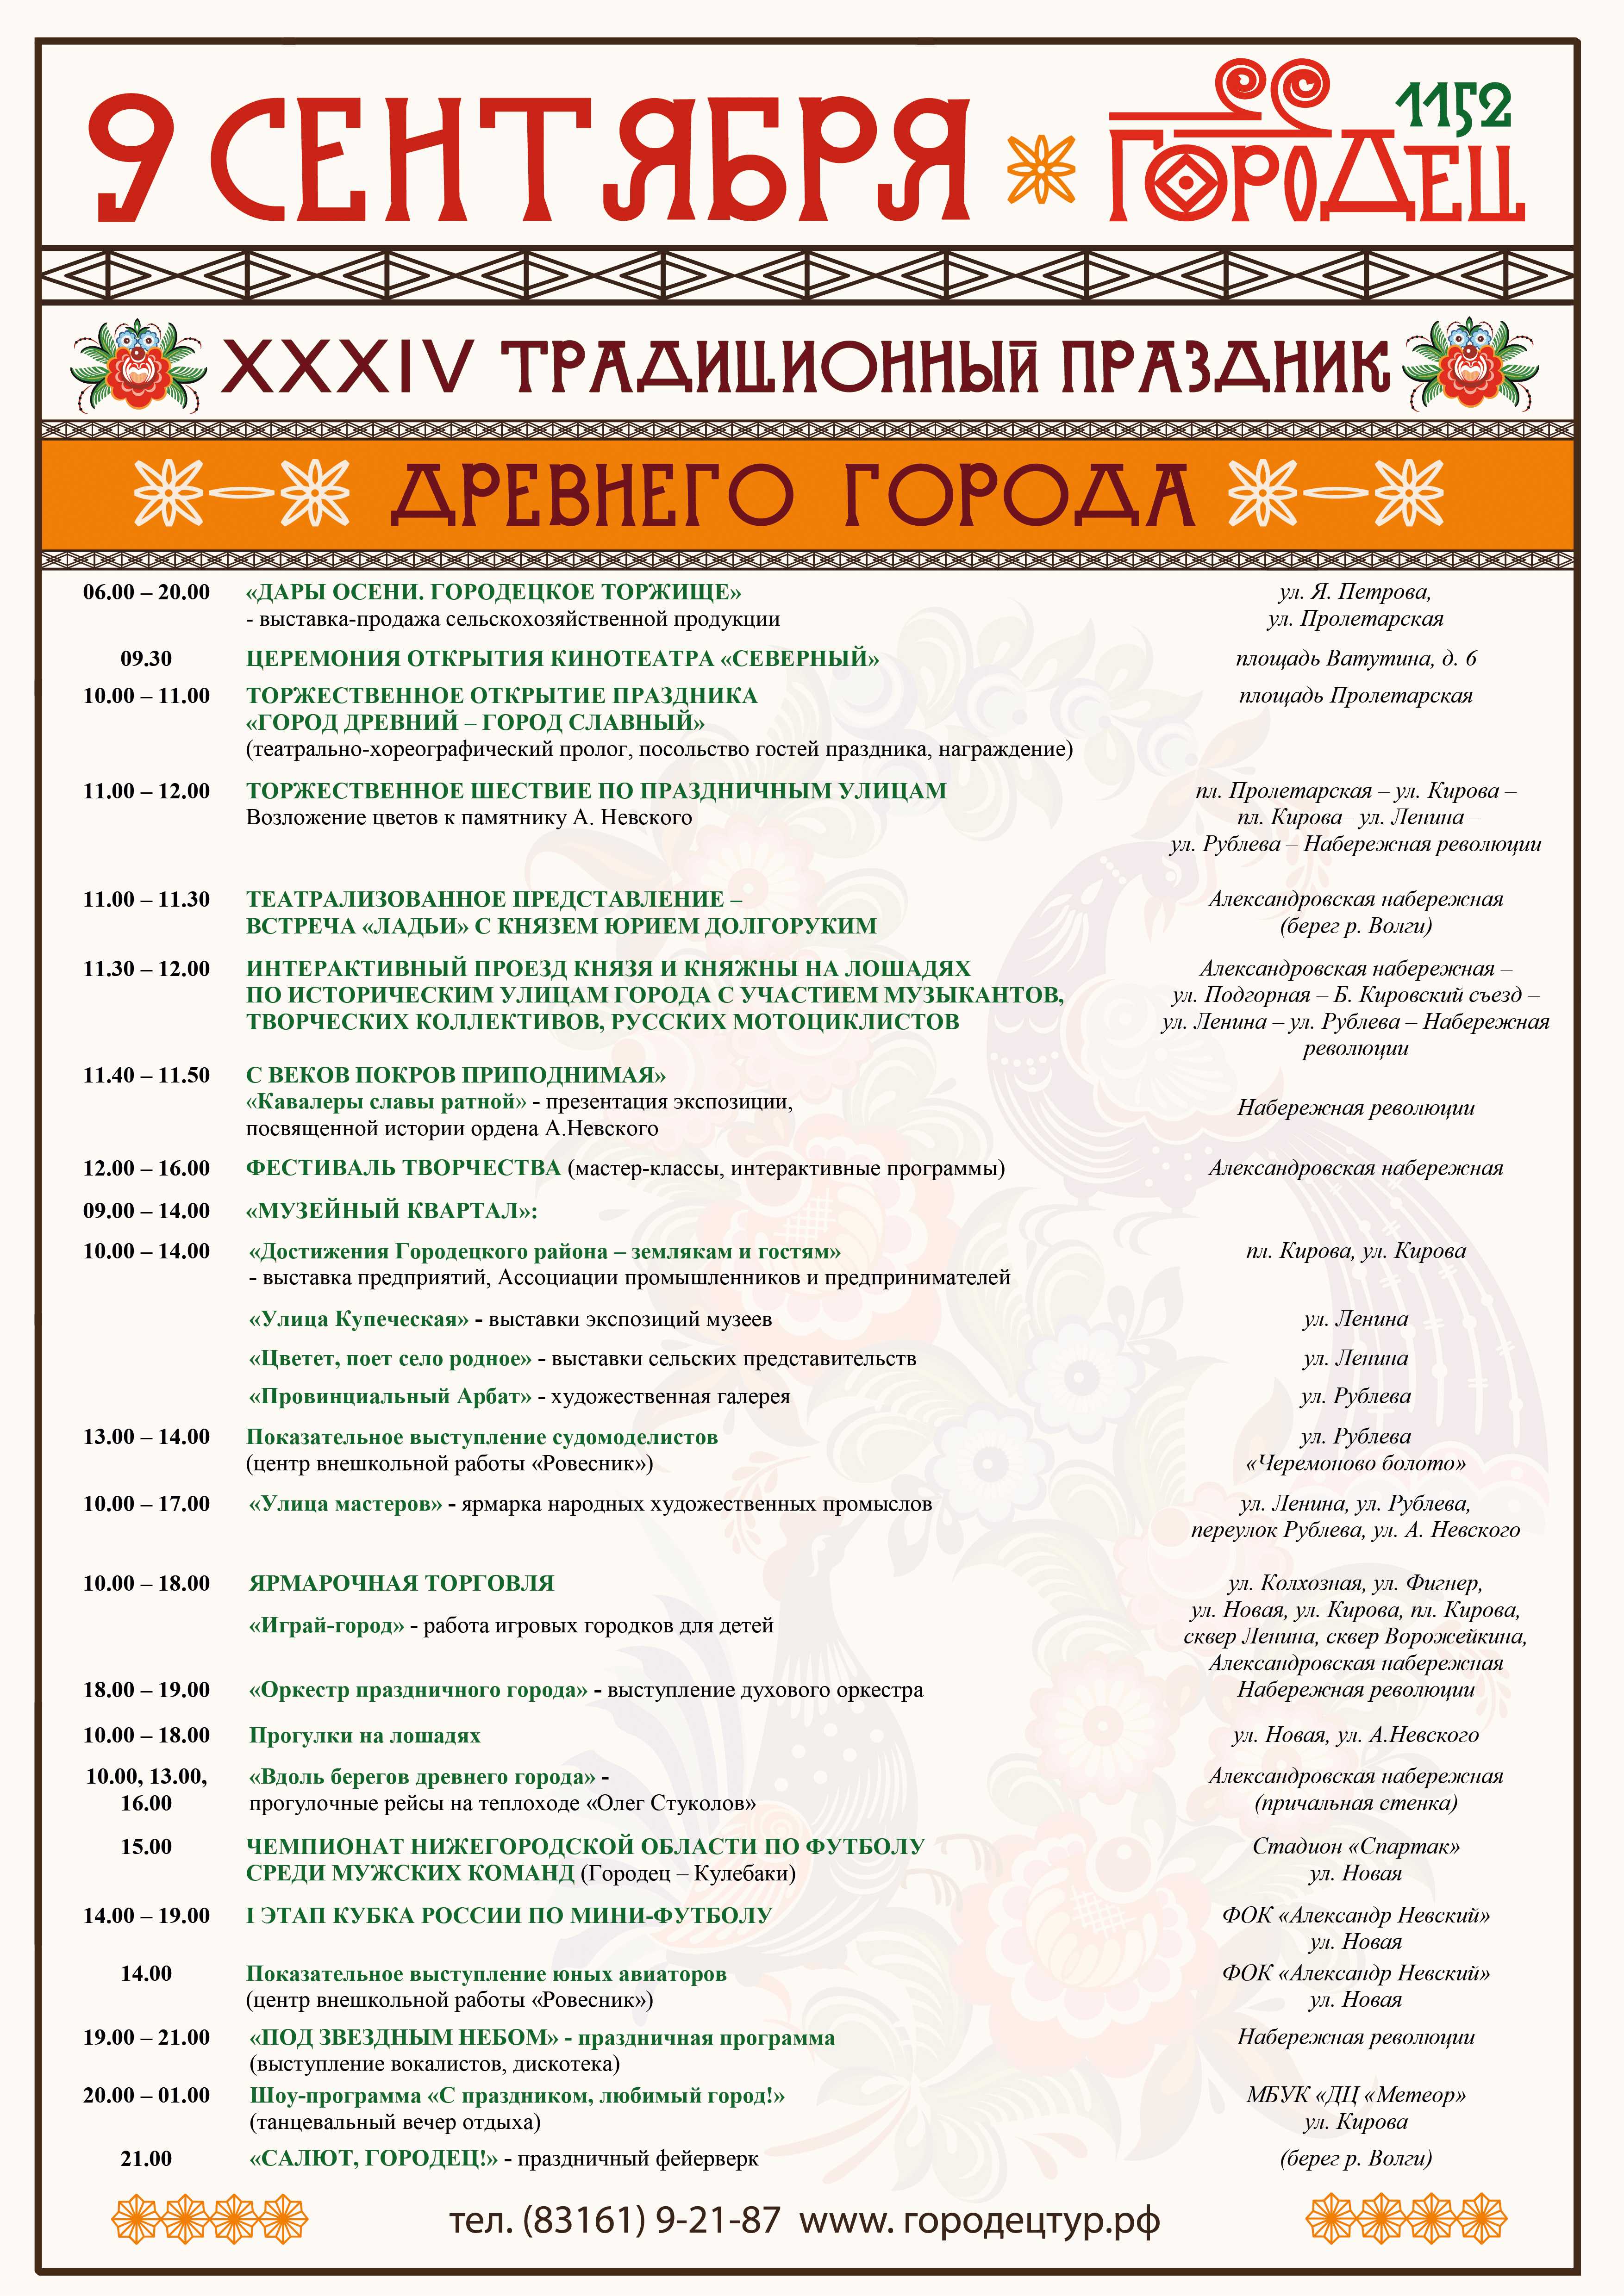 День города Городецк 9 сентября 2017 года - программа мероприятий, когда салют